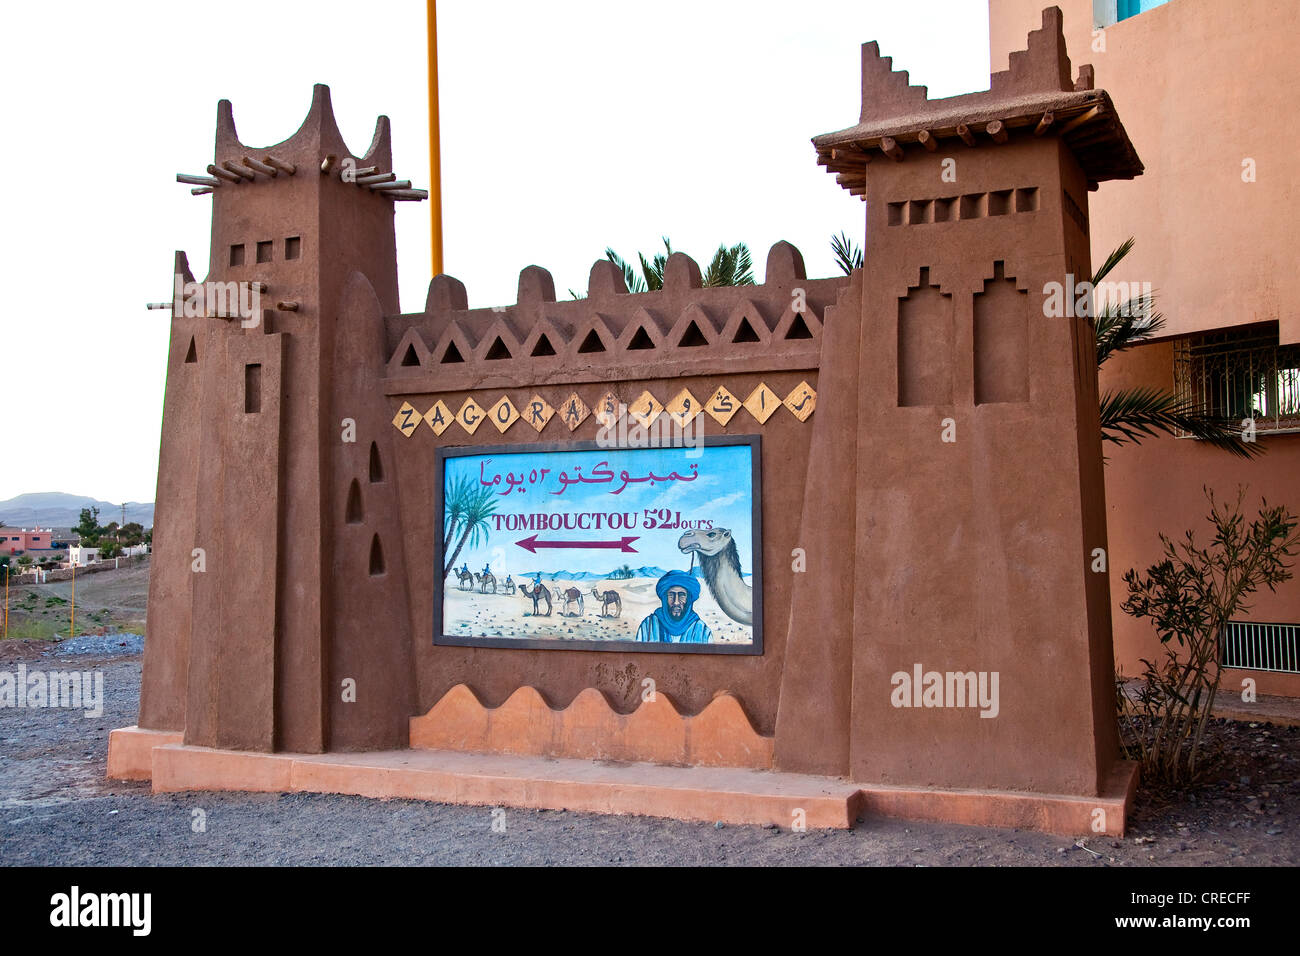 La scheda di destinazione, Tombouctou Timbuktu, 52 giorni, mostrando la carovana storico percorso attraverso il deserto del Sahara, , Valle di Draa Foto Stock